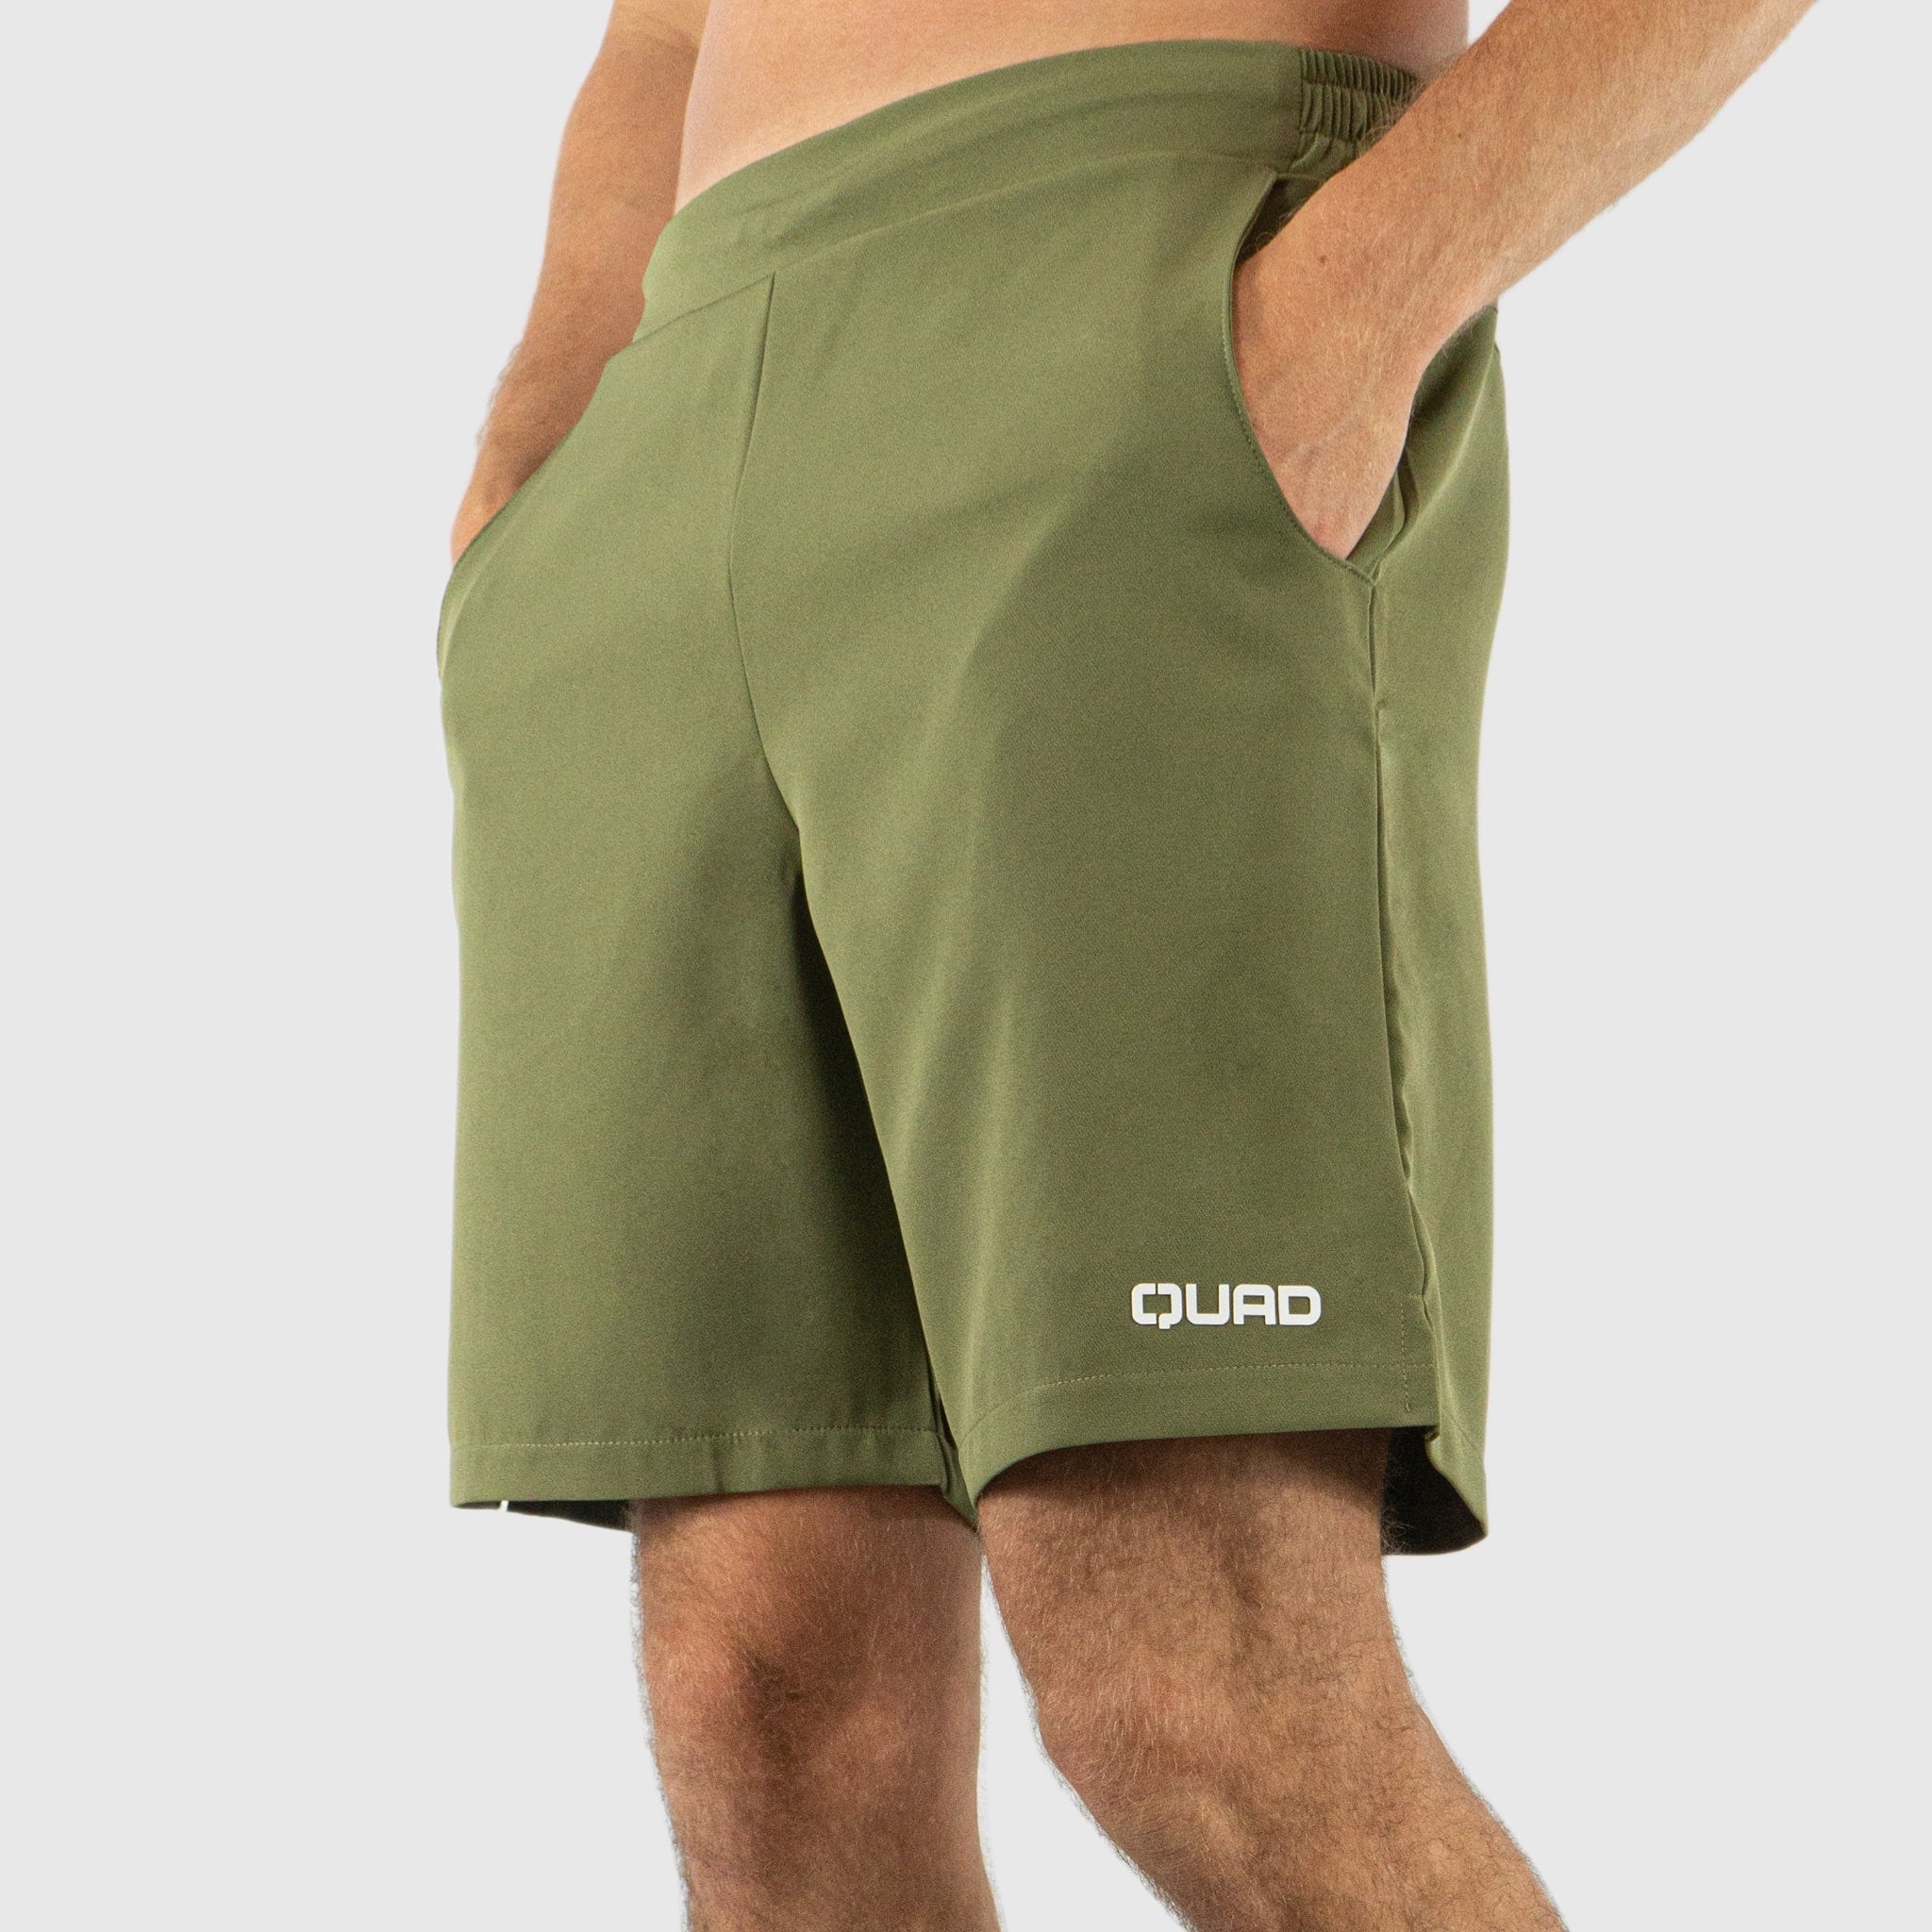 Quad Padel Shorts green left side